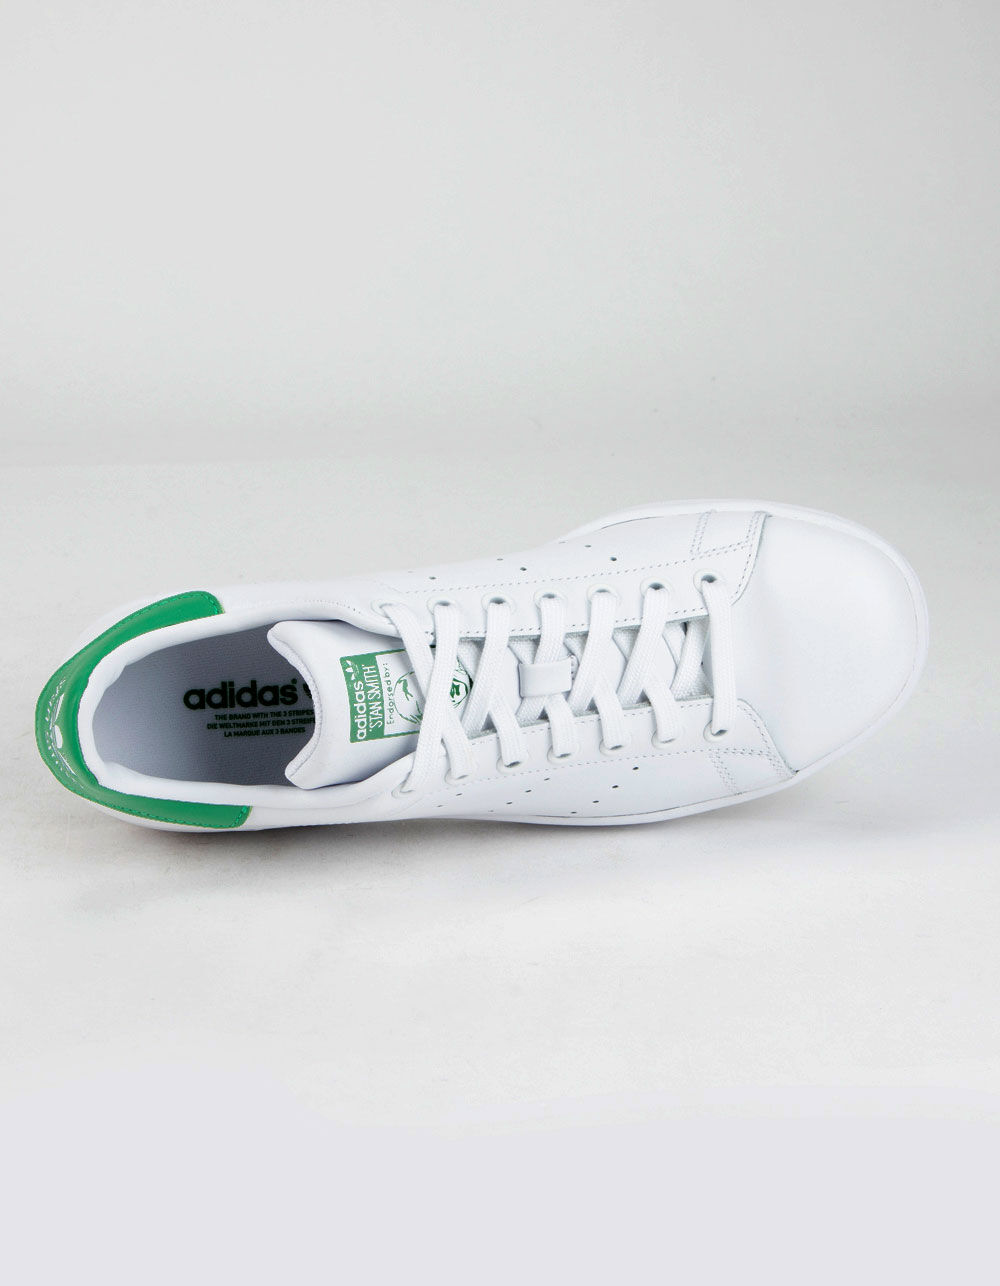 adidas Stan Smith White Off White (Women's) - BB5162 - US